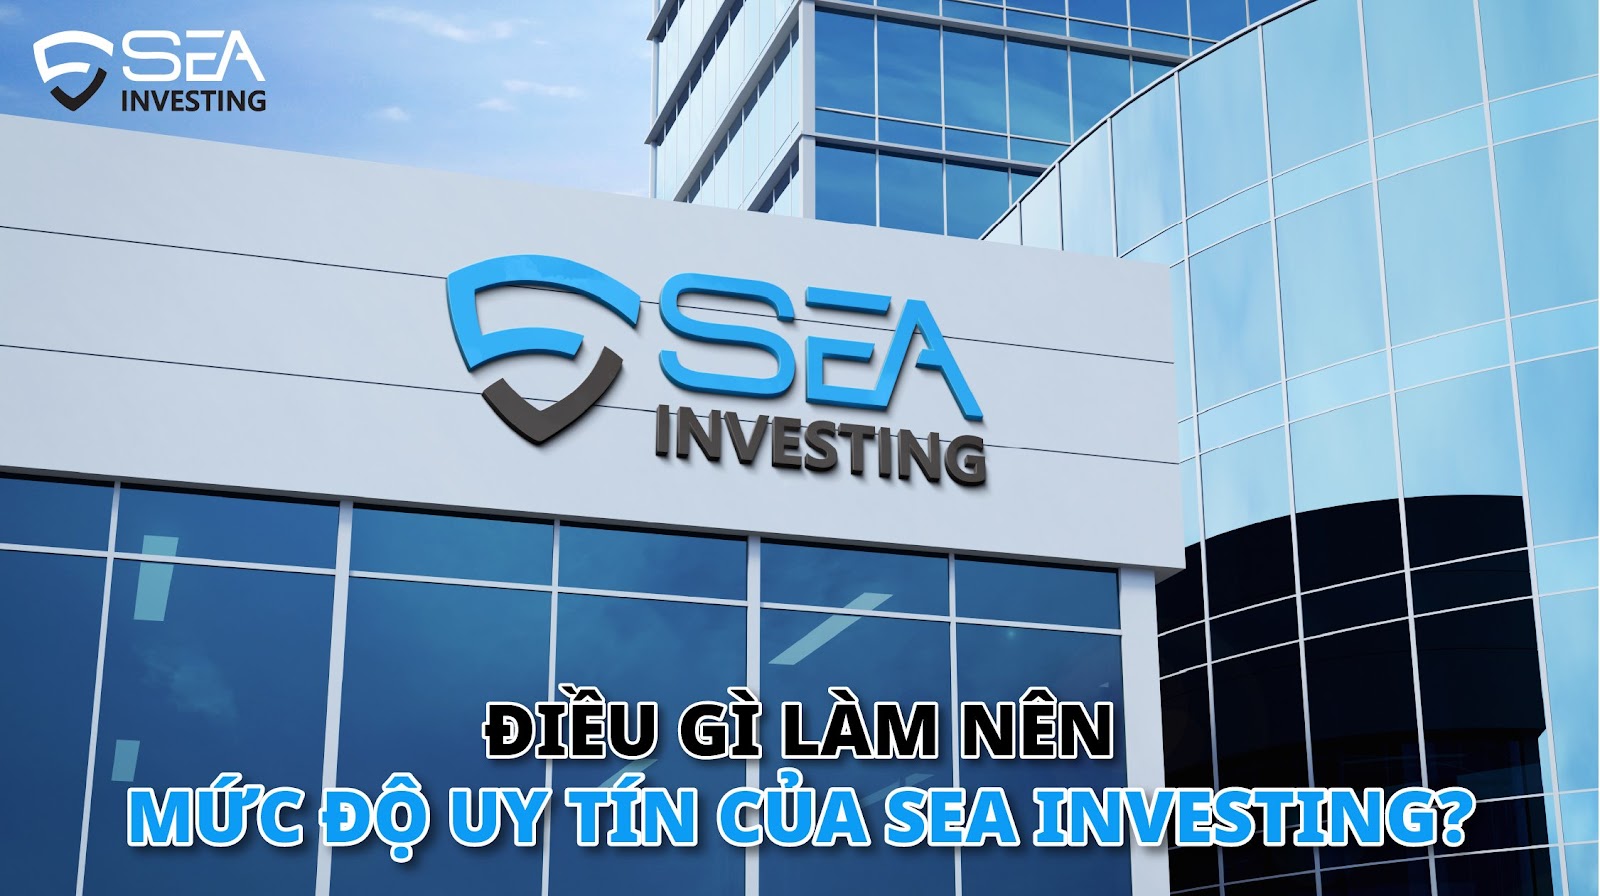 Sea Investing Uy Tín Đem Lại Lợi Ích Gì Cho Nhà Đầu Tư?